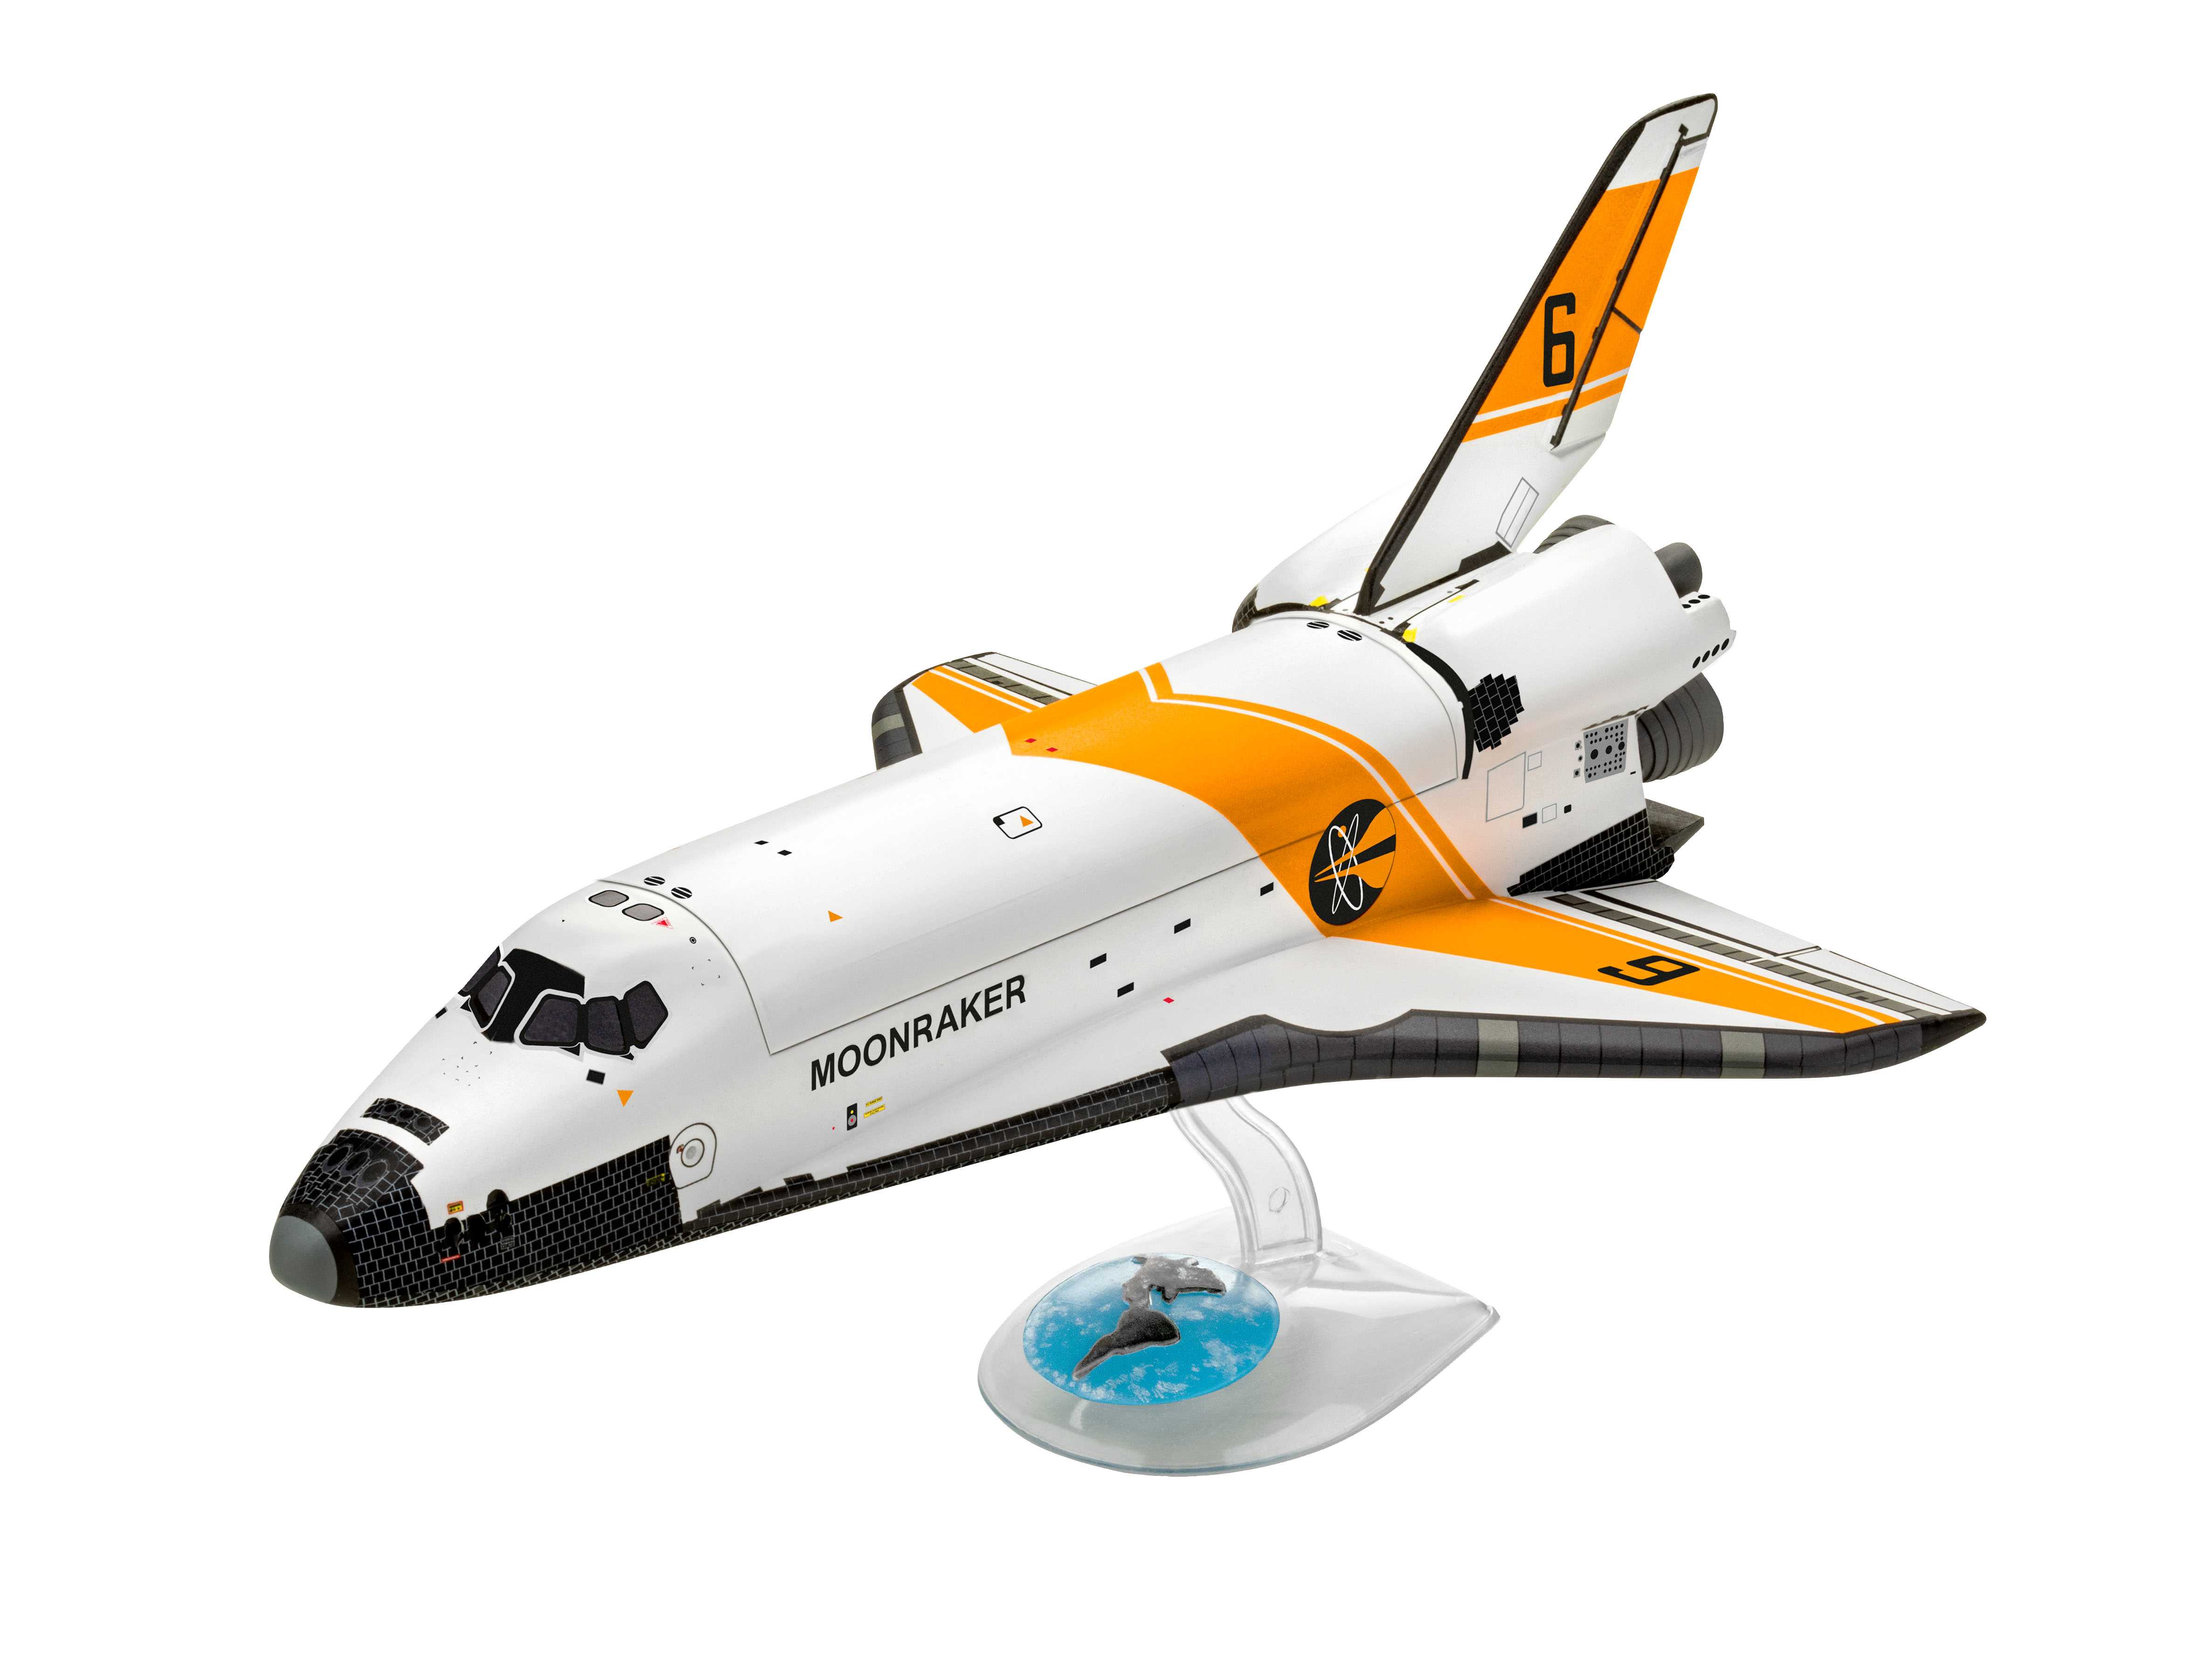 Fotografie Gift-Set James Bond 05665 - "Moonraker" Space Shuttle (1:144)